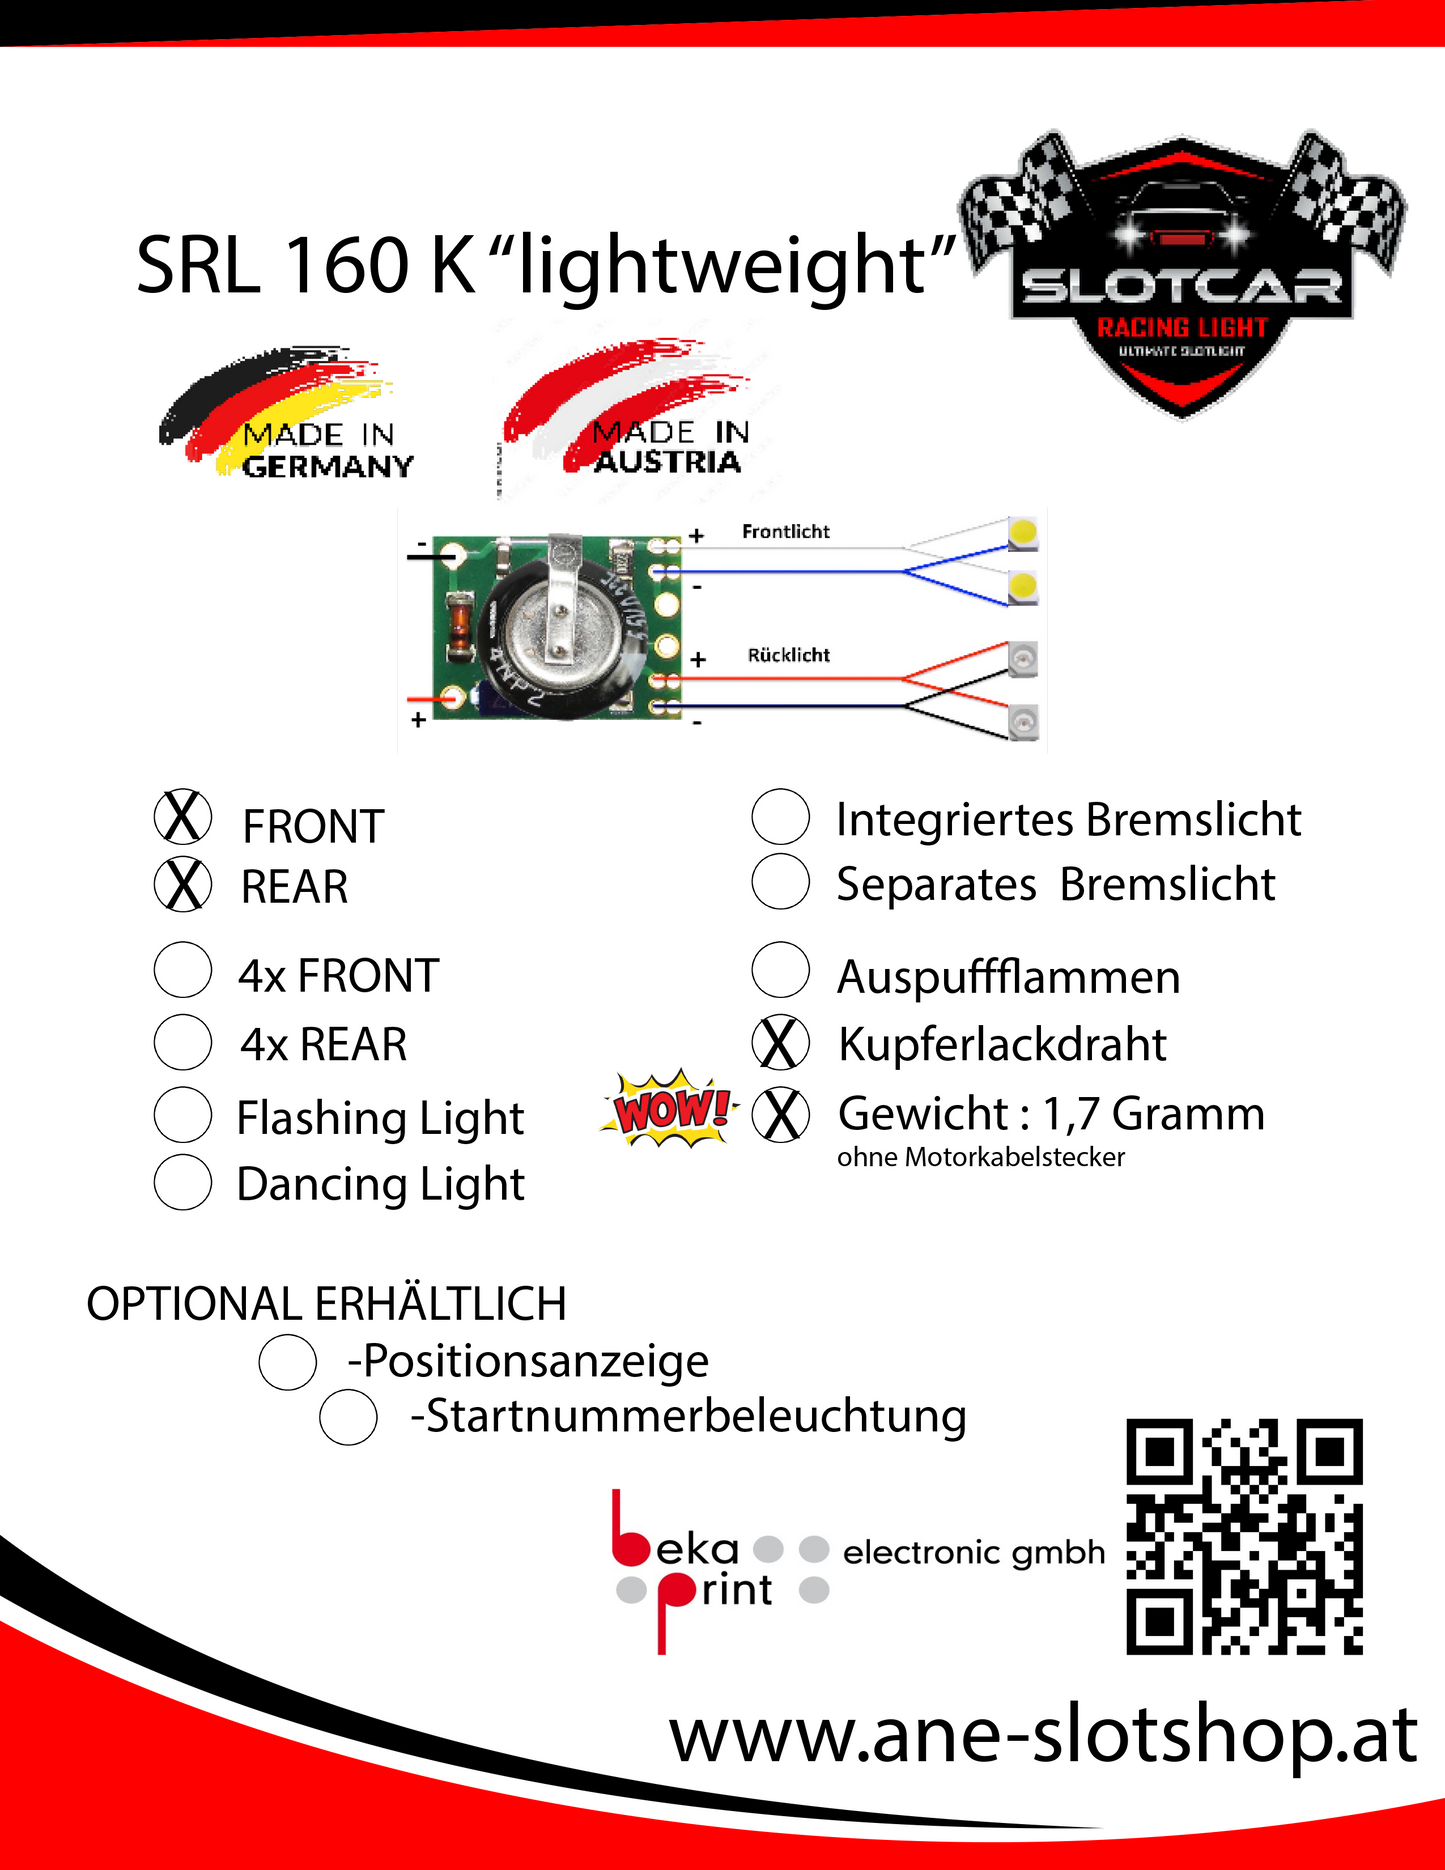 SRL-160 K "lightweight" XENON